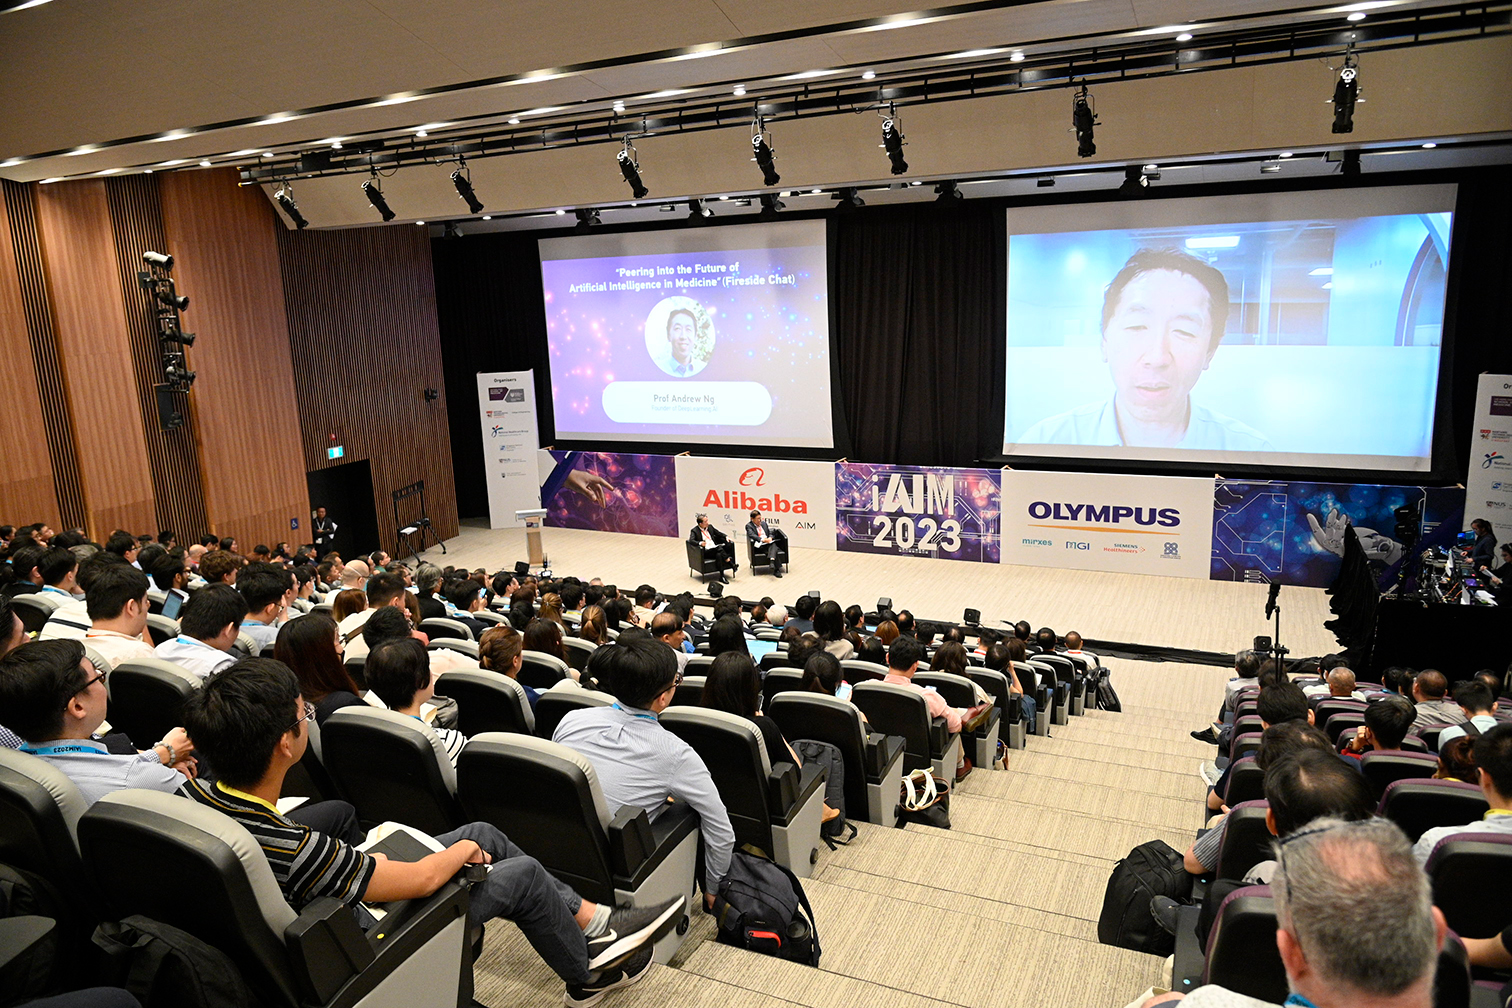 Prof Andrew Ng presenting Keynote 2 of iAIM 2023